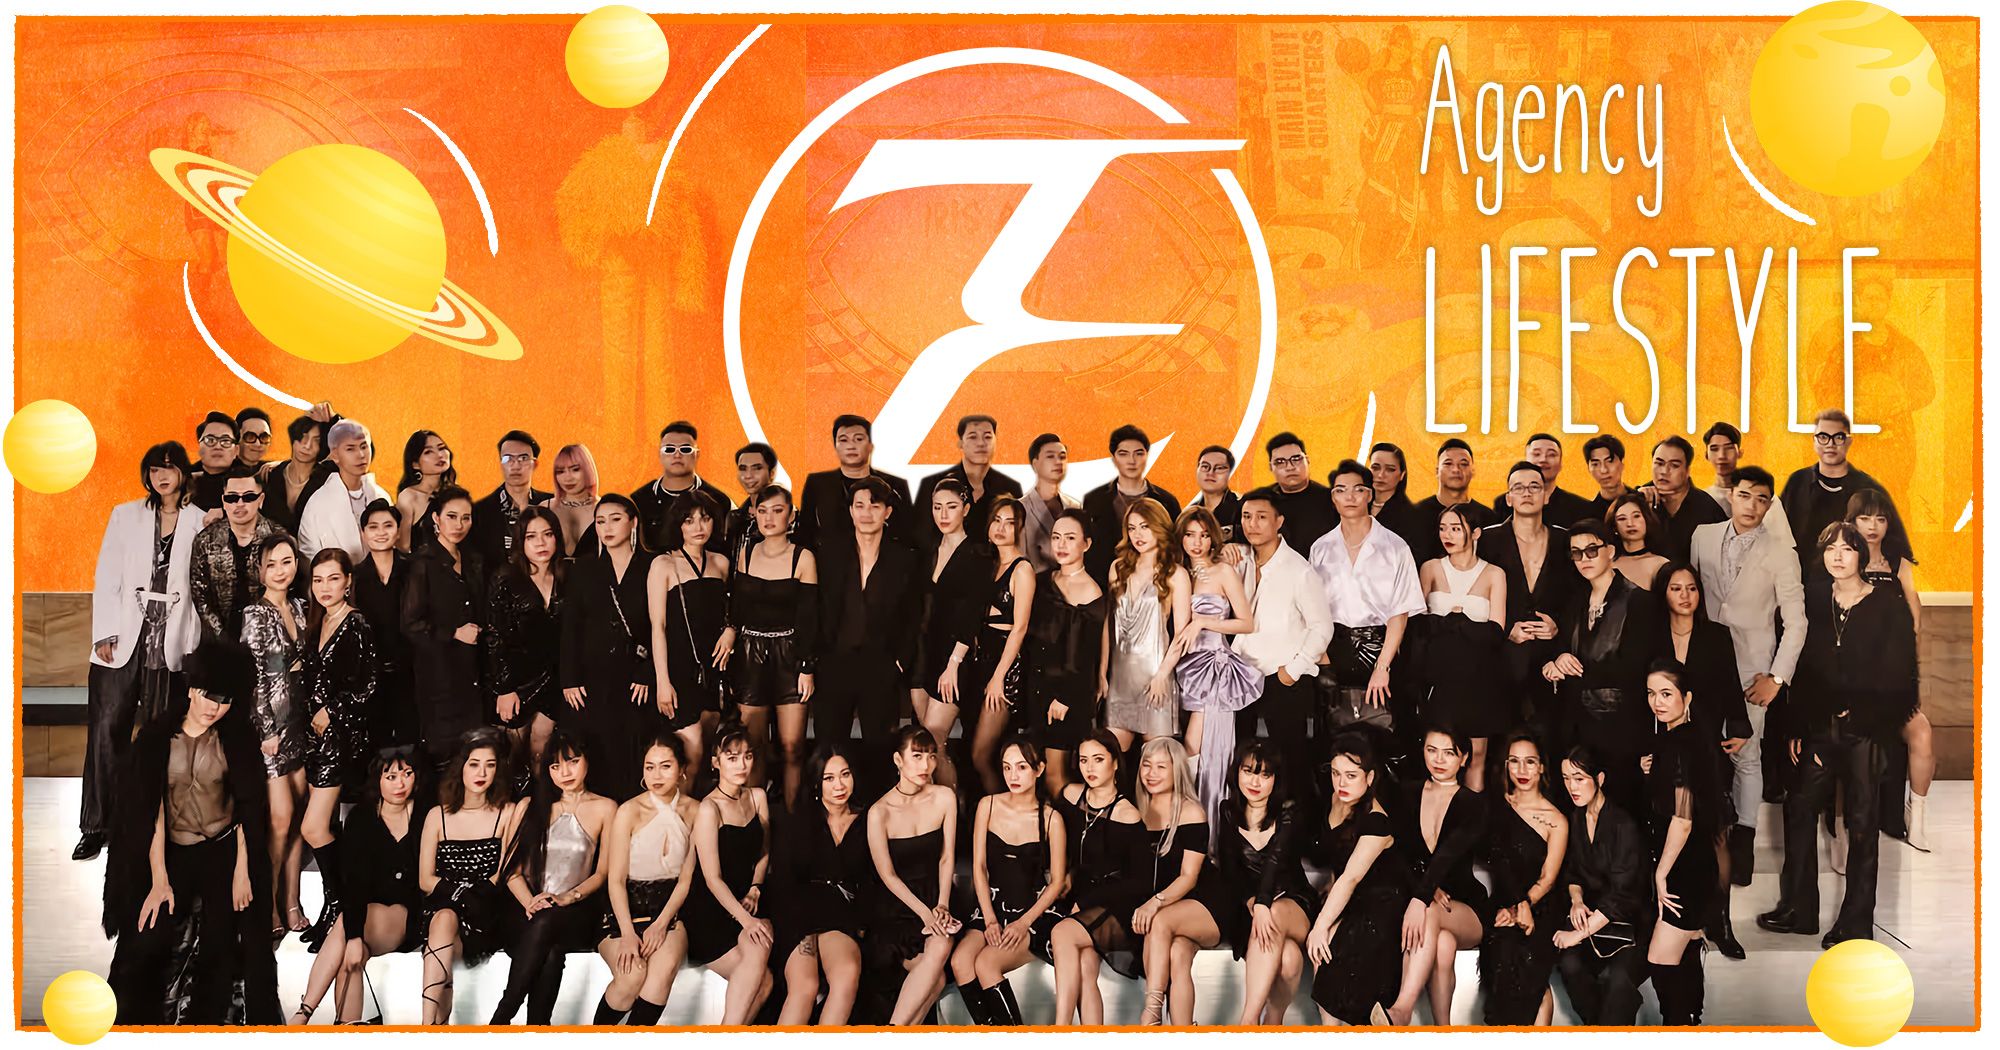 ZEE - Hành trình 6 năm khẳng định vị thế agency "lifestyle" khác biệt trên thị trường quảng cáo